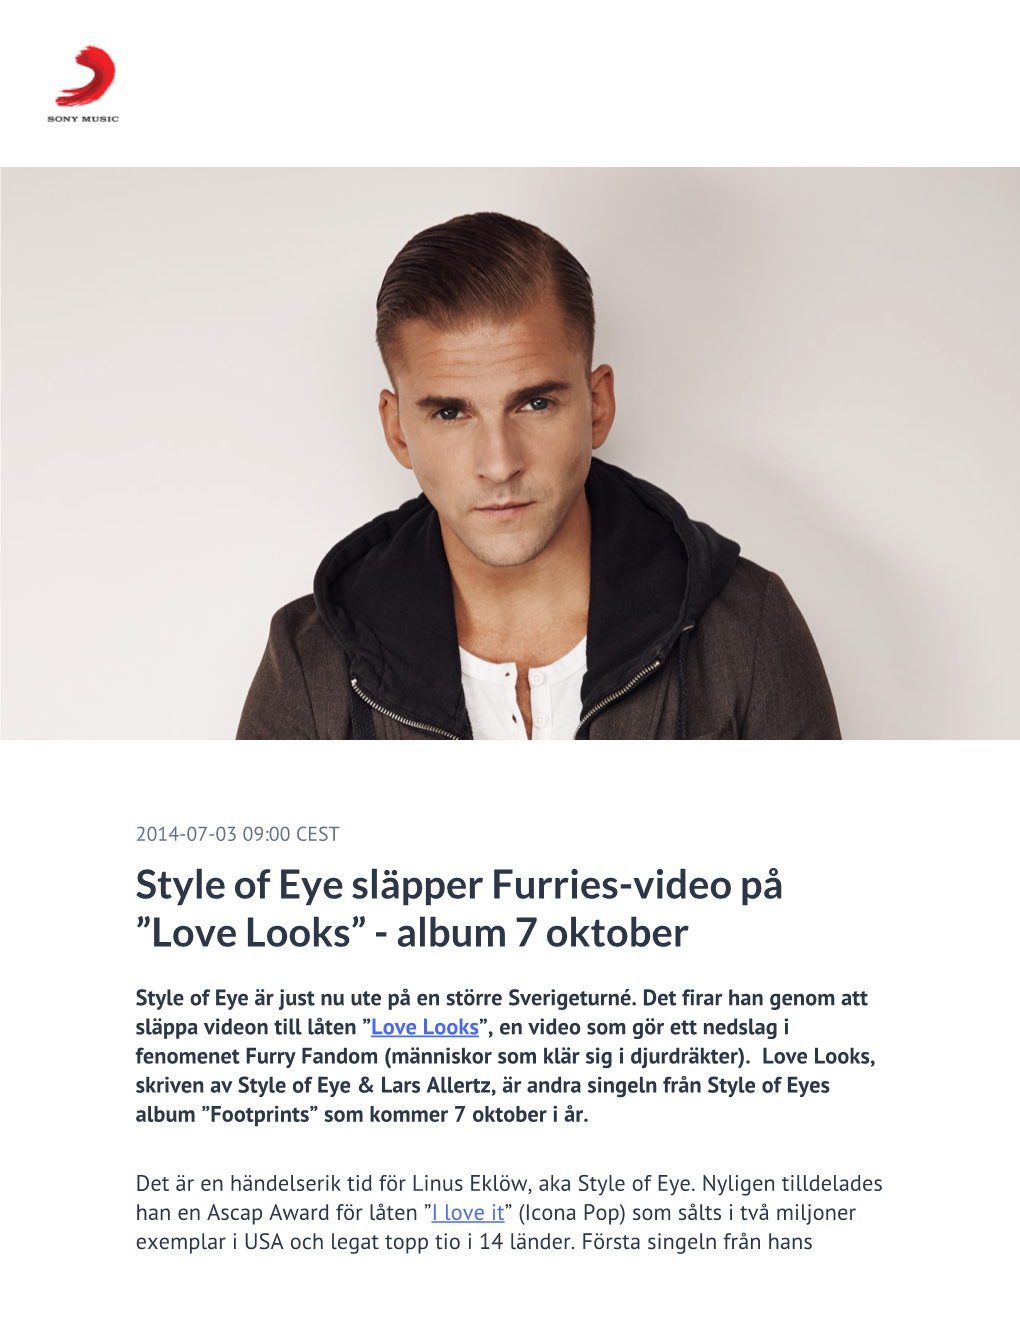 Style of Eye Släpper Furries-Video På ”Love Looks” - Album 7 Oktober